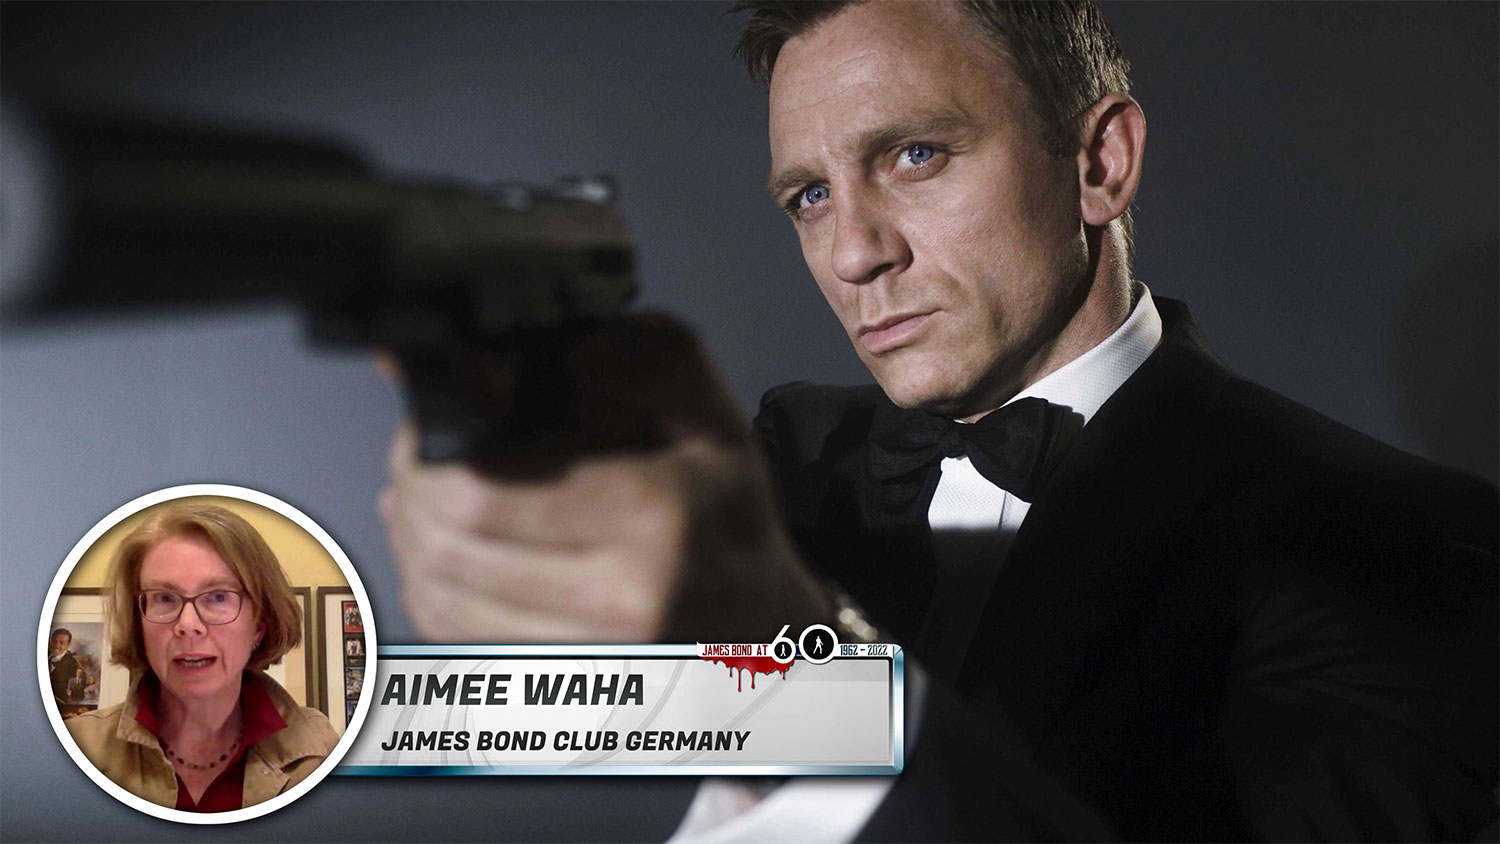 60 jaar James Bond: Een documentaire voor en door 007 liefhebbers